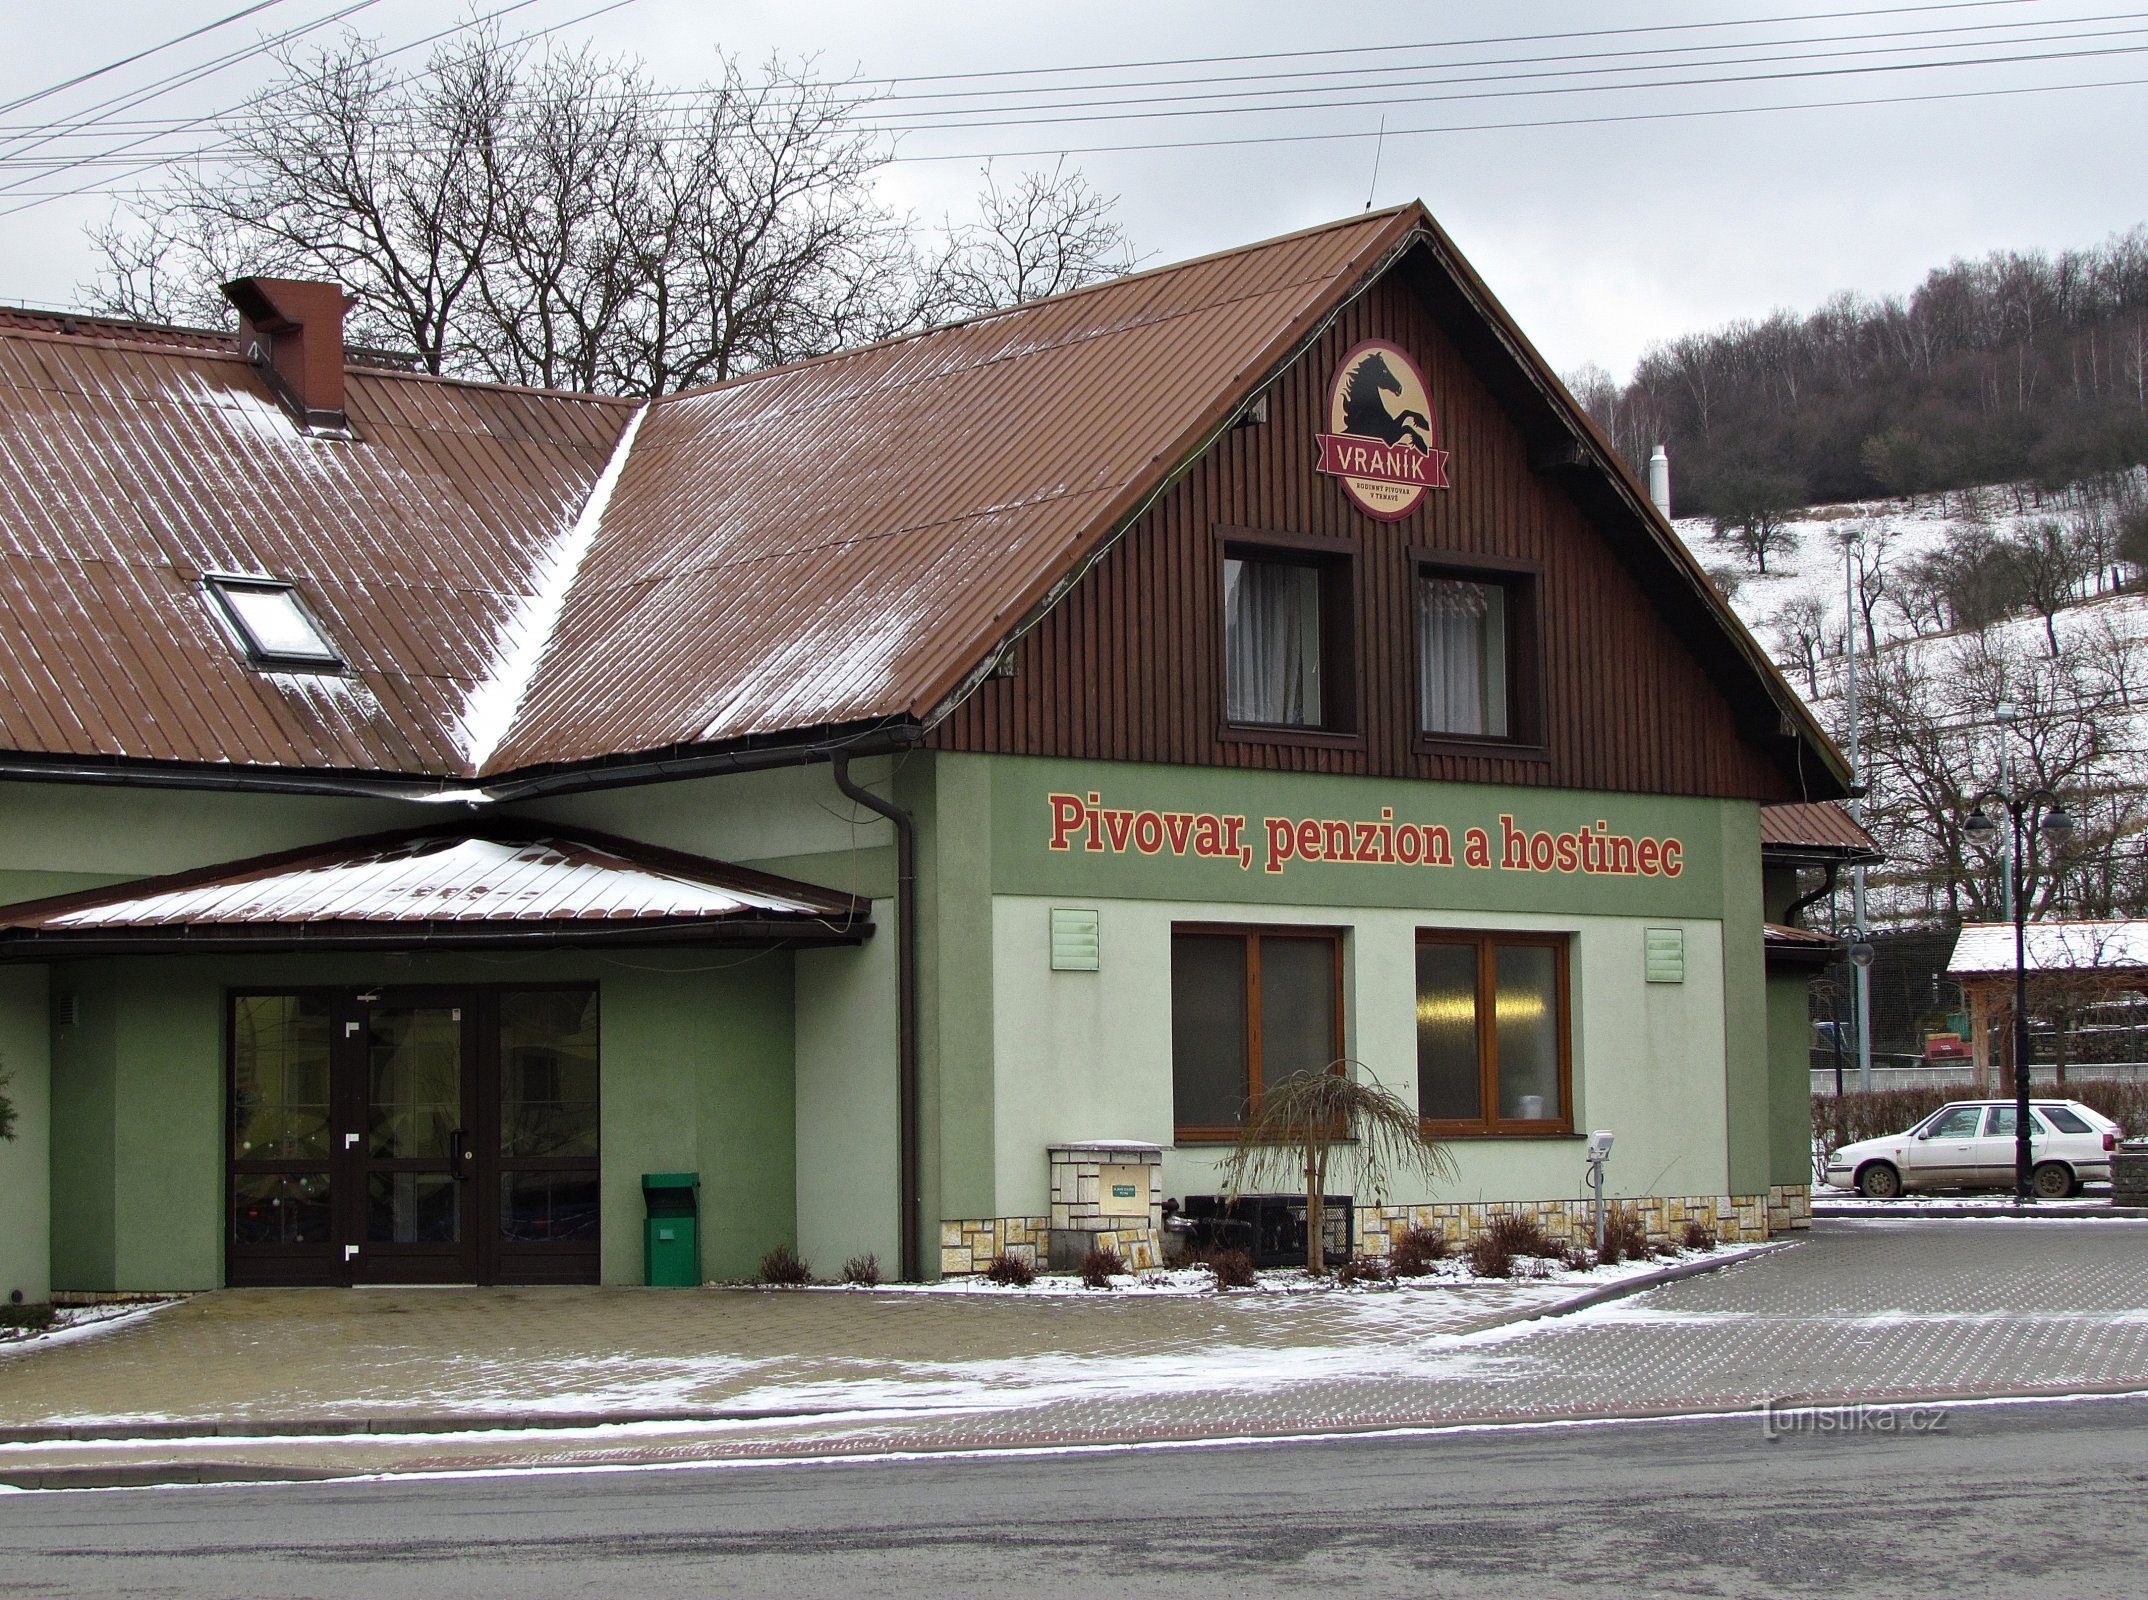 Trnava pension, inn and Koníček brewery